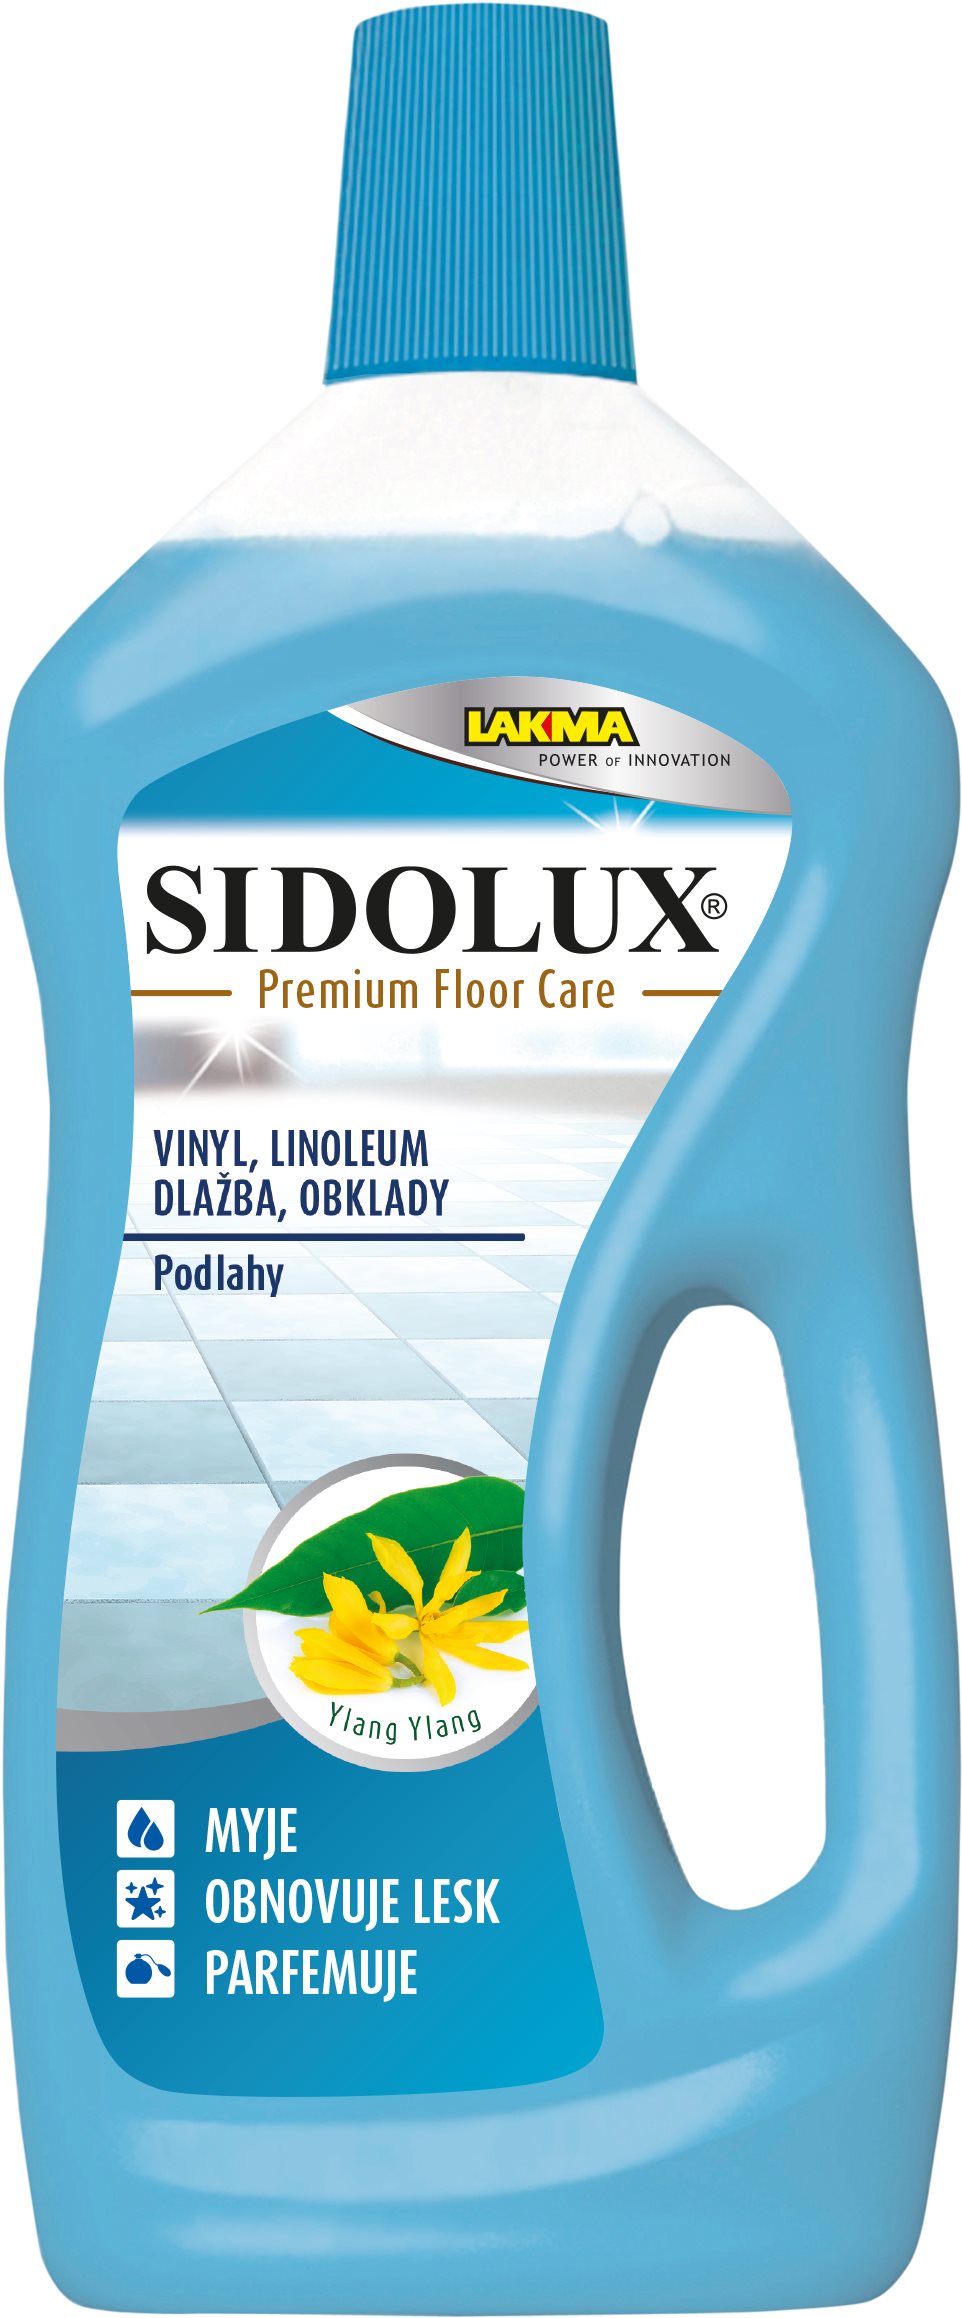 Padlótisztító SIDOLUX Premium Floor Care